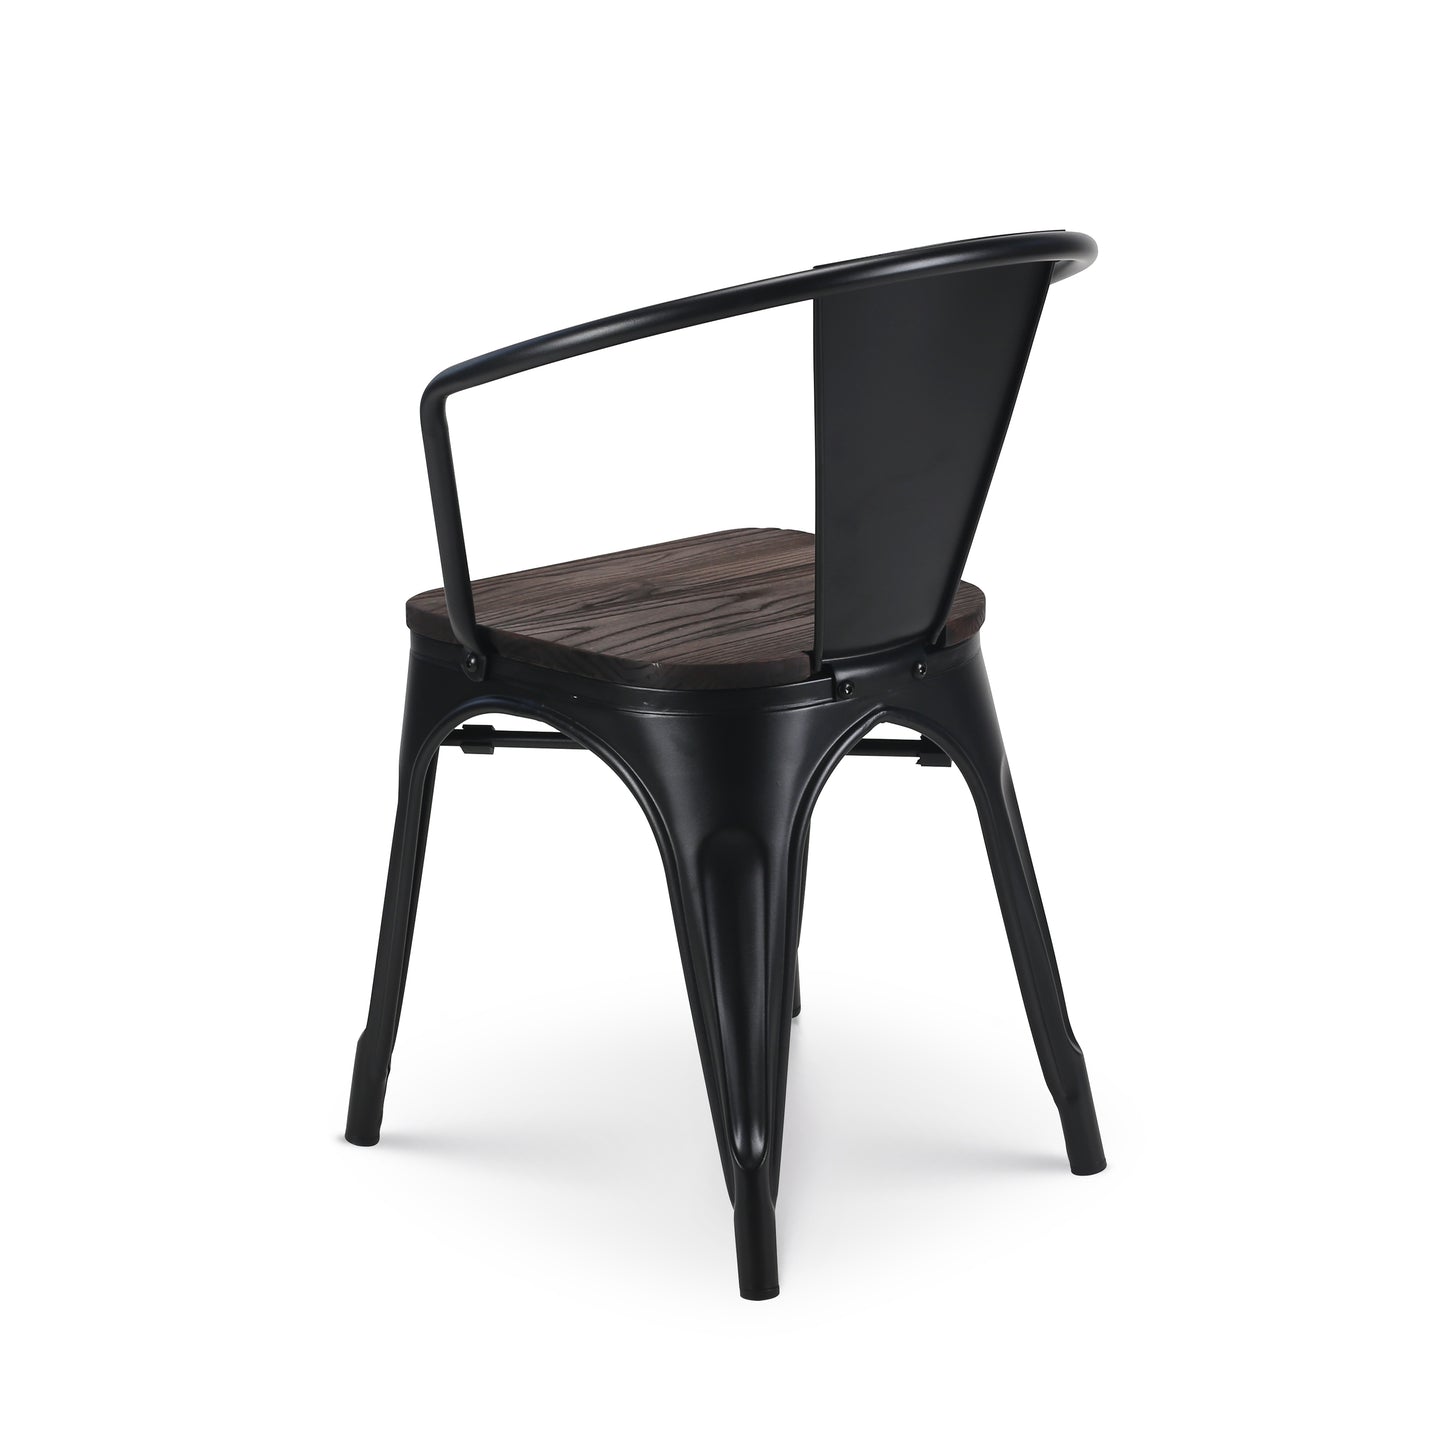 Lot de 4 chaises en métal noir mat style industriel avec assise en bois foncé - Avec accoudoirs